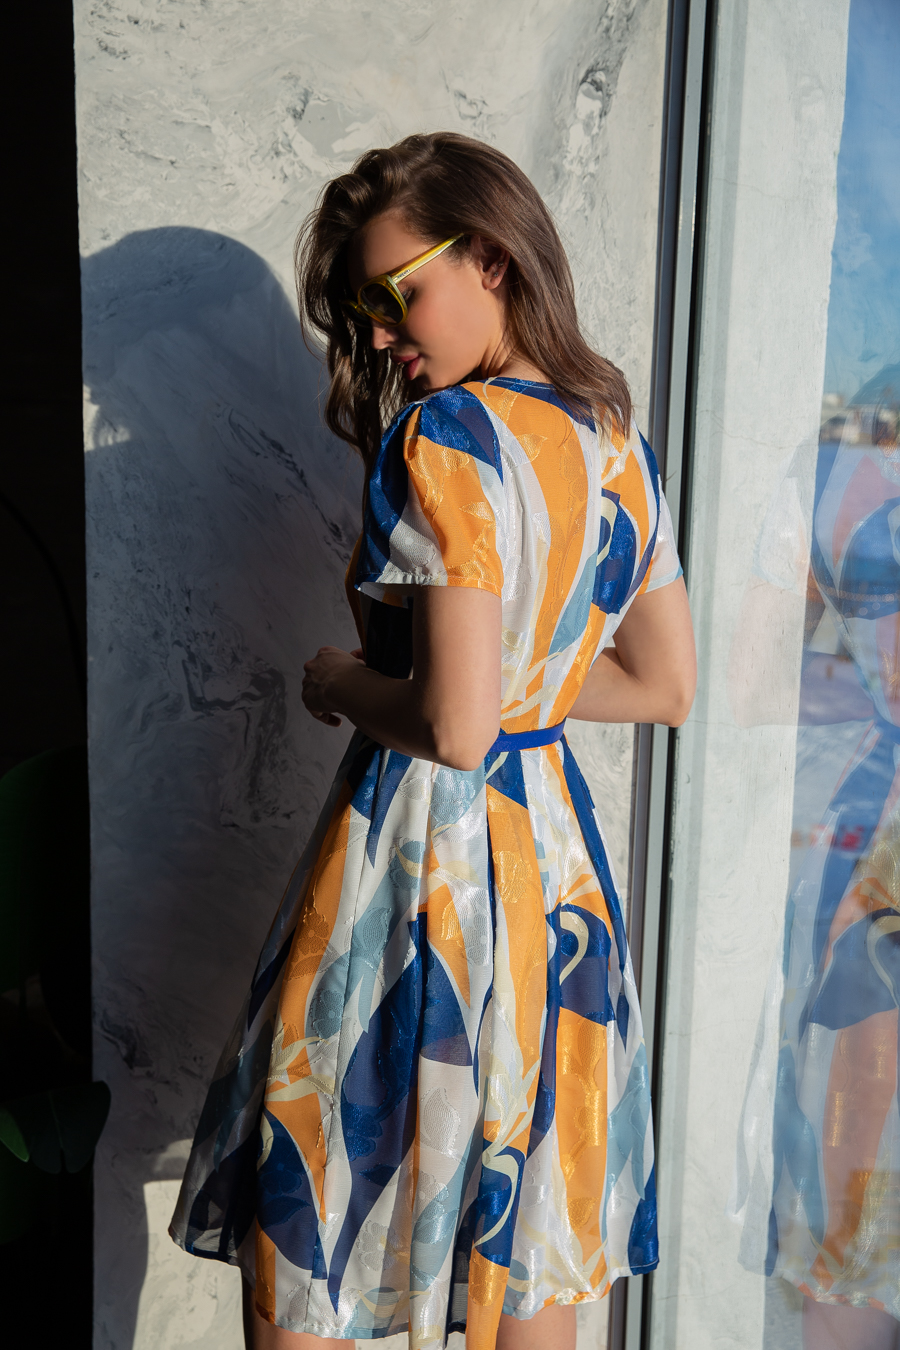 Сурена, летящее шифоновое платье с расклешенной юбкой, отрезное по талии + ремень, 2 цвета от Ритини